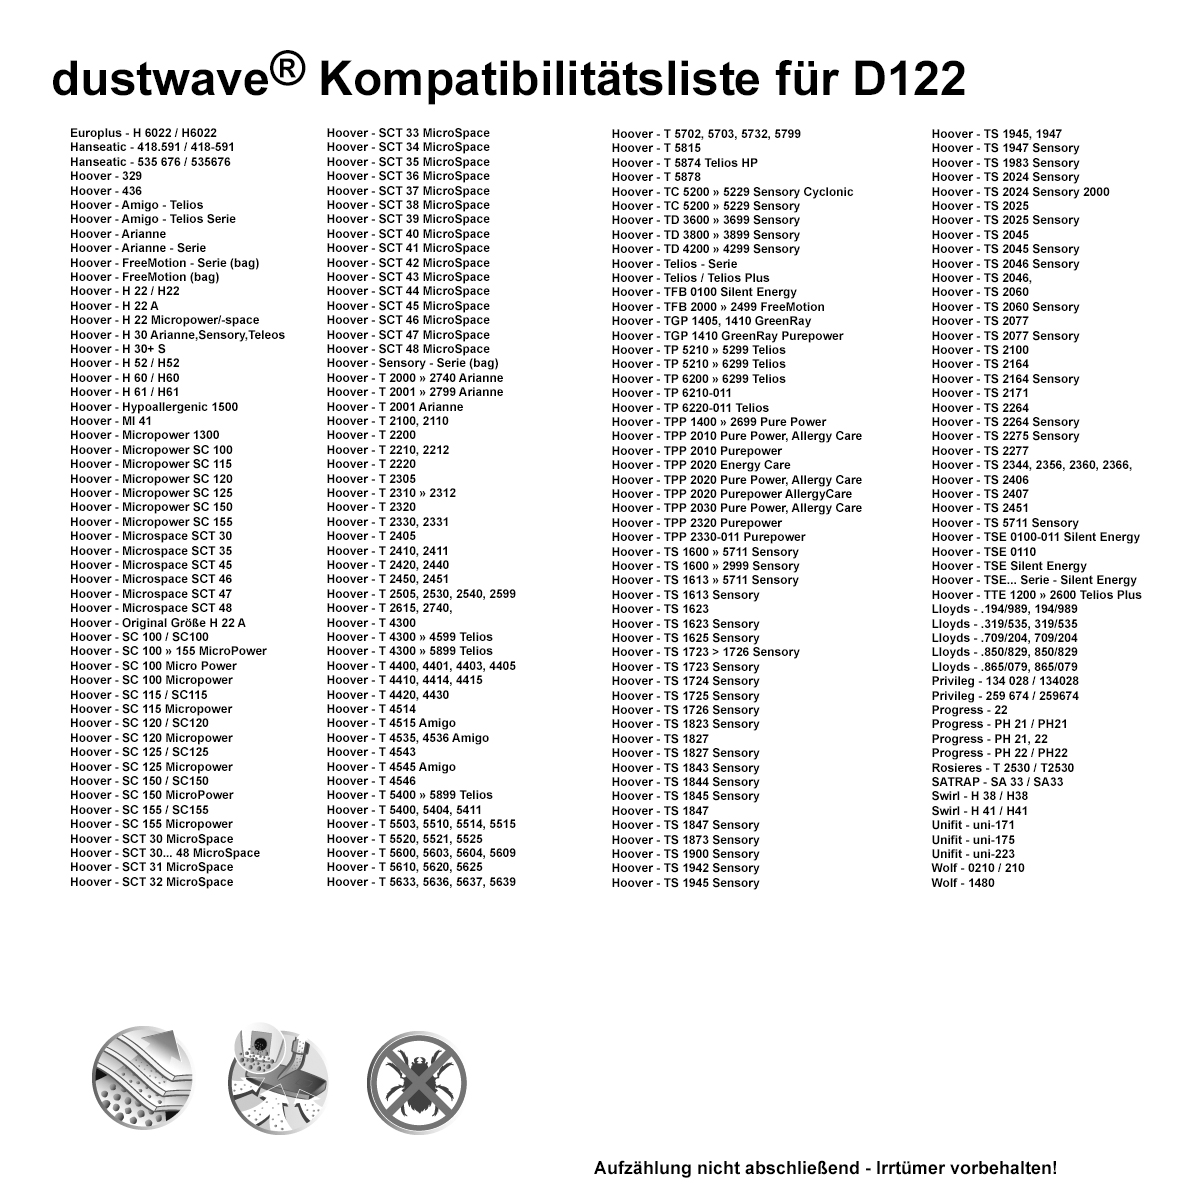 Dustwave® 10 Staubsaugerbeutel für Hoover PC18 011 - hocheffizient, mehrlagiges Mikrovlies mit Hygieneverschluss - Made in Germany